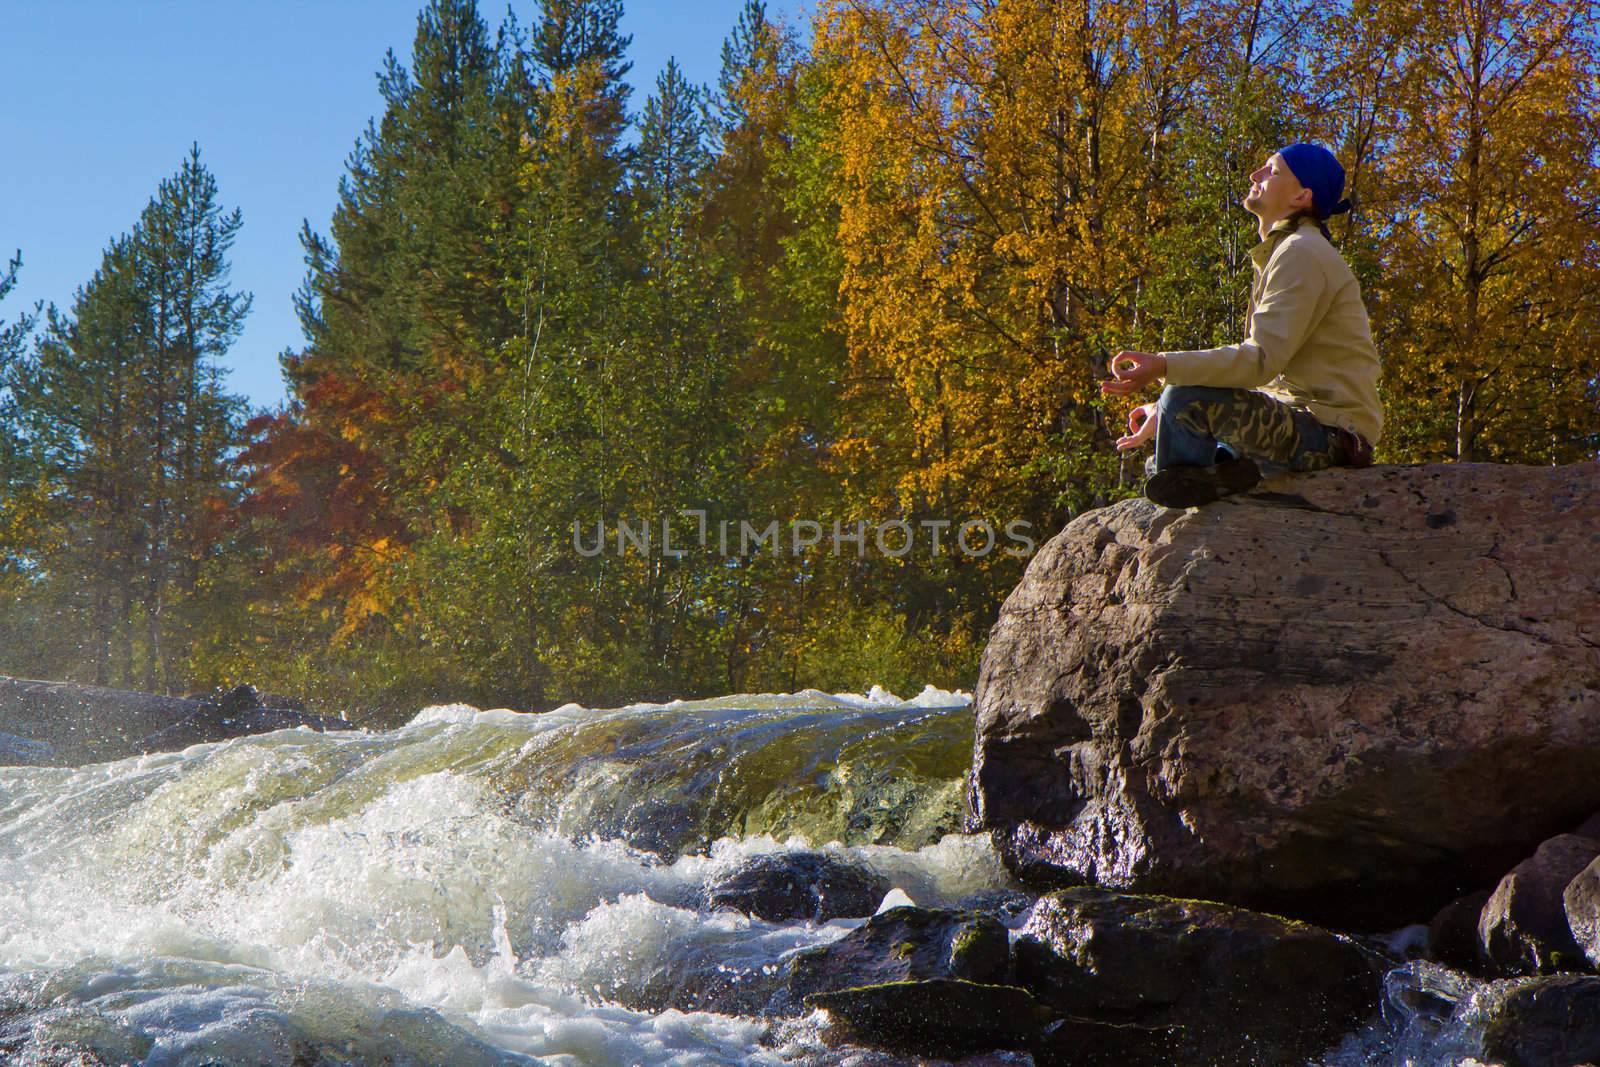 Meditation at the Falls by pzRomashka